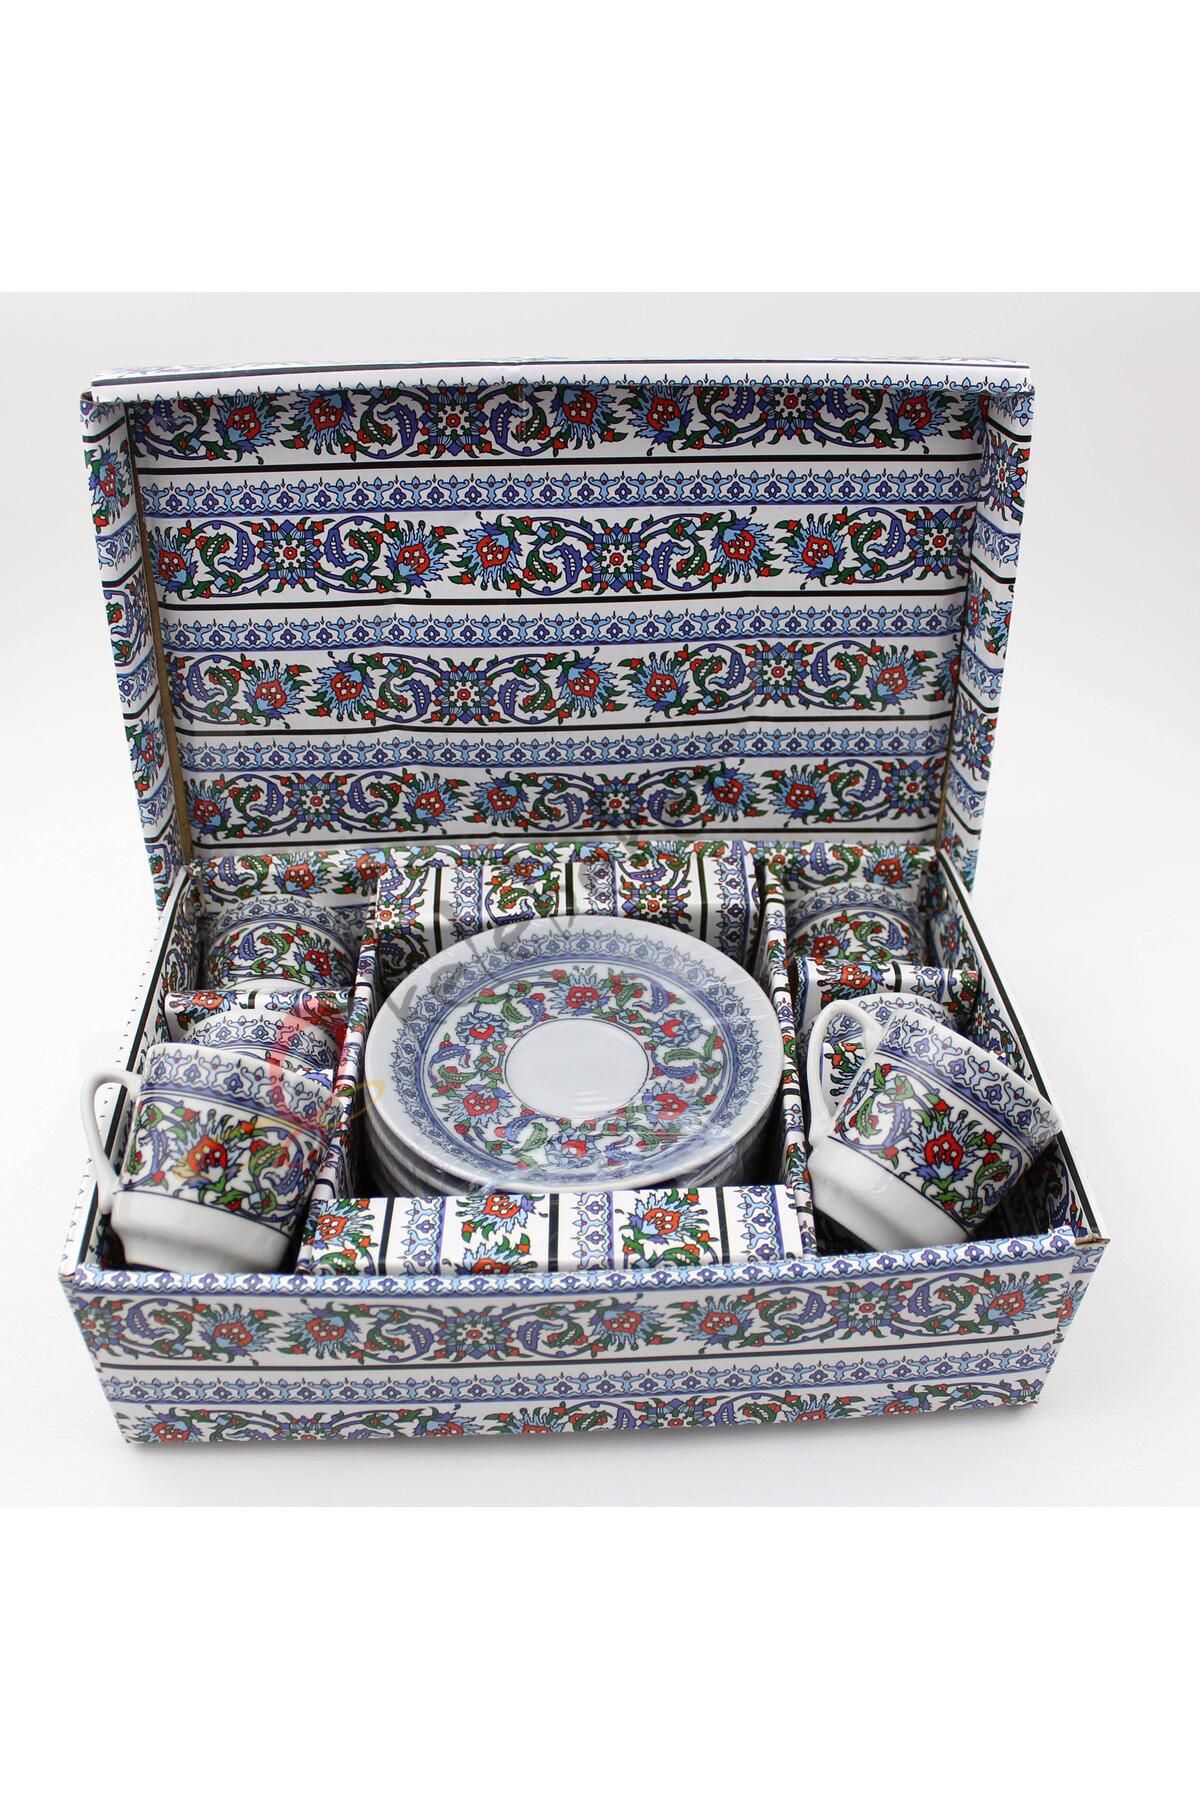 Lavin Ithal Porselen Kahve Fincanı Topkapı Model 6 Kişilik 12 Parça